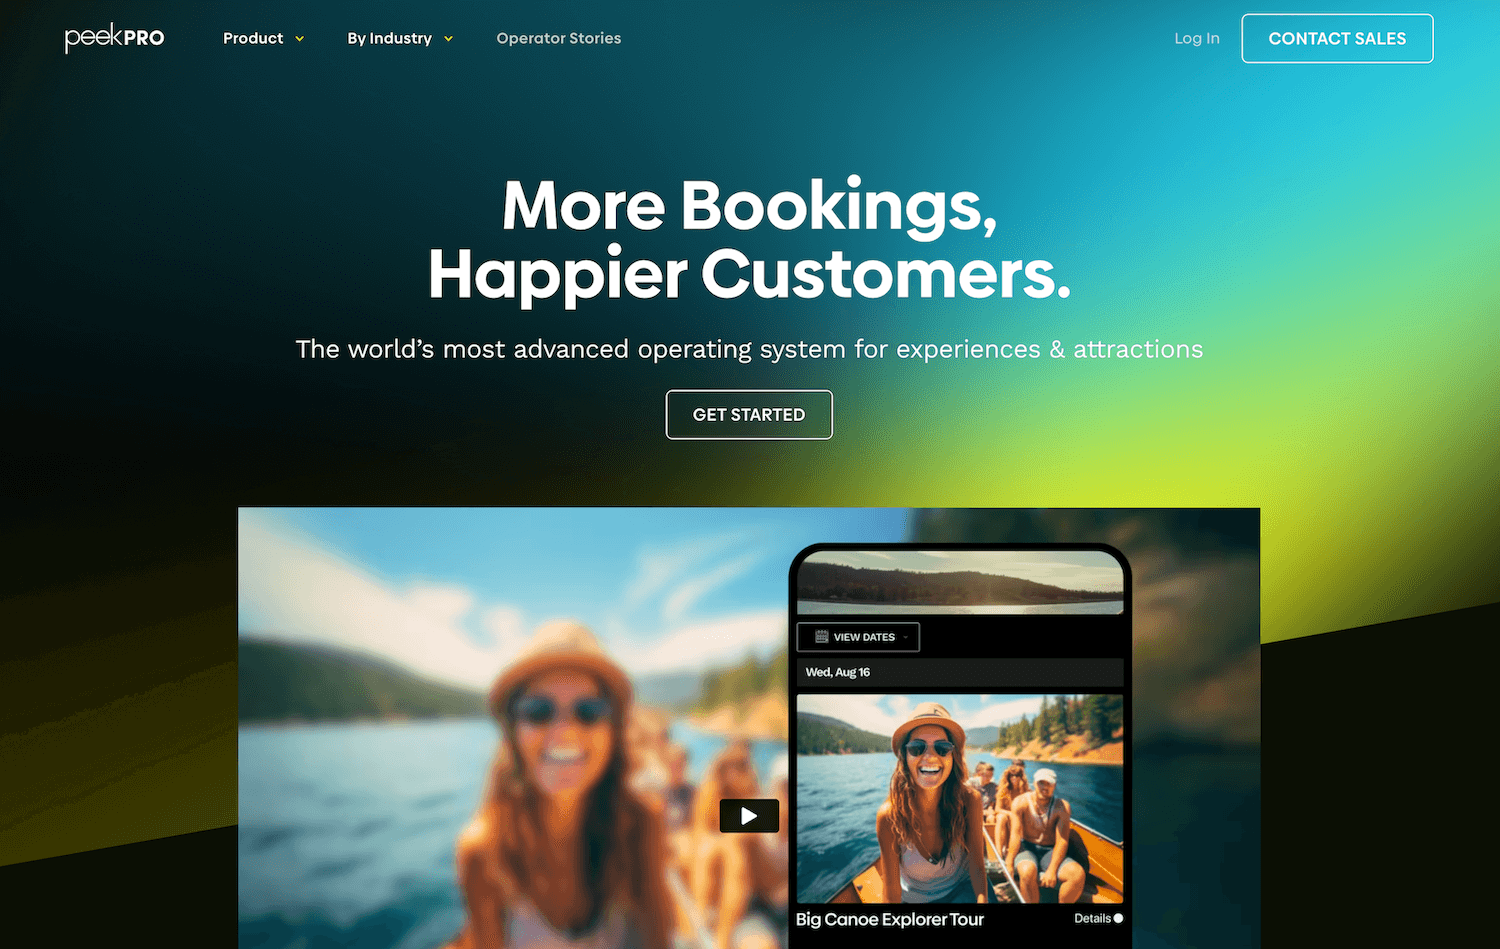 Peek Pro homepage: More Bookings. Happier Customers.